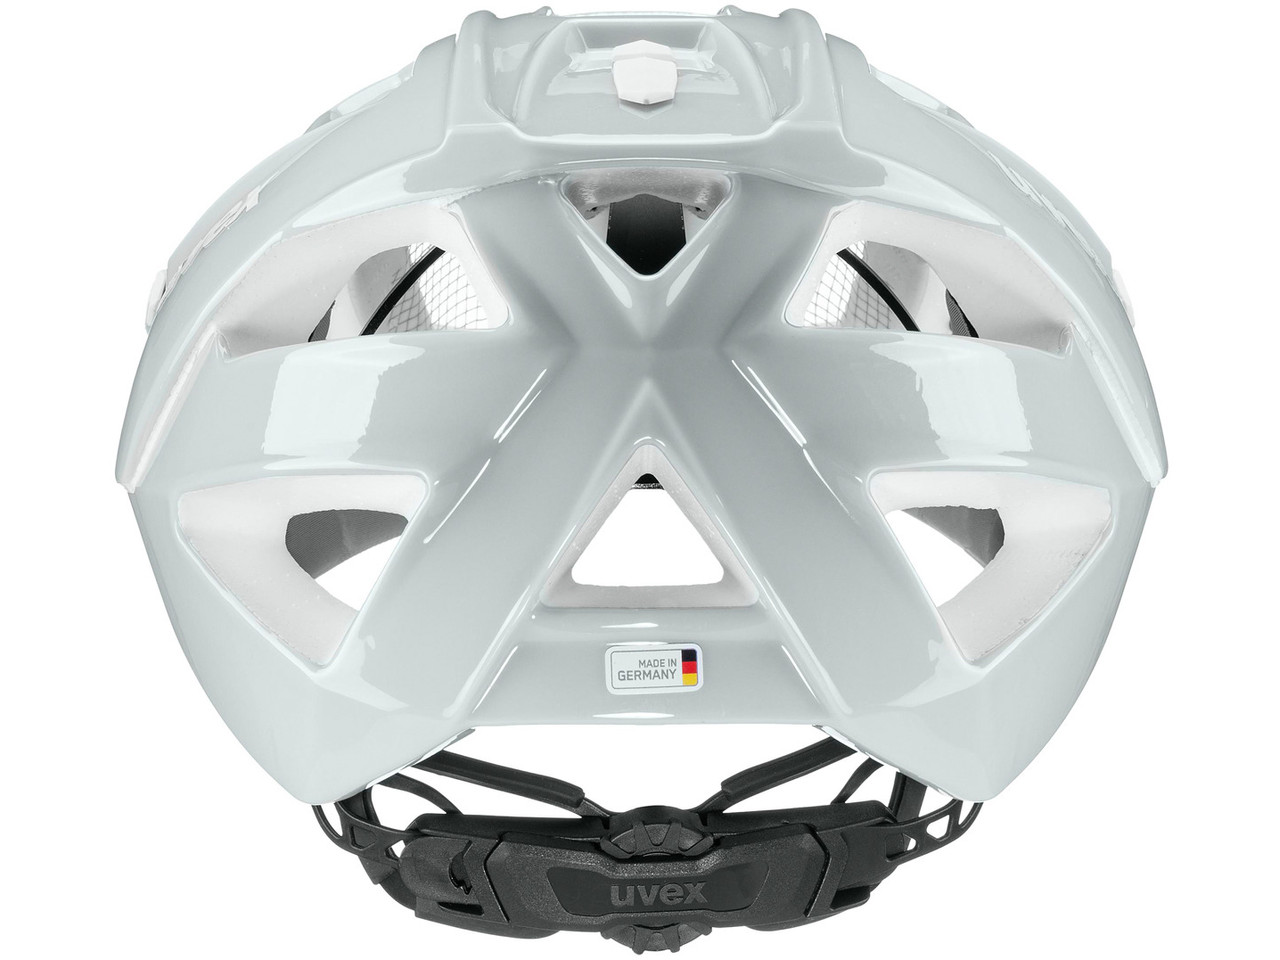 UVEX quatro radhelm casco de bicicleta bike casco de protección allmountain rueda casco s41077523